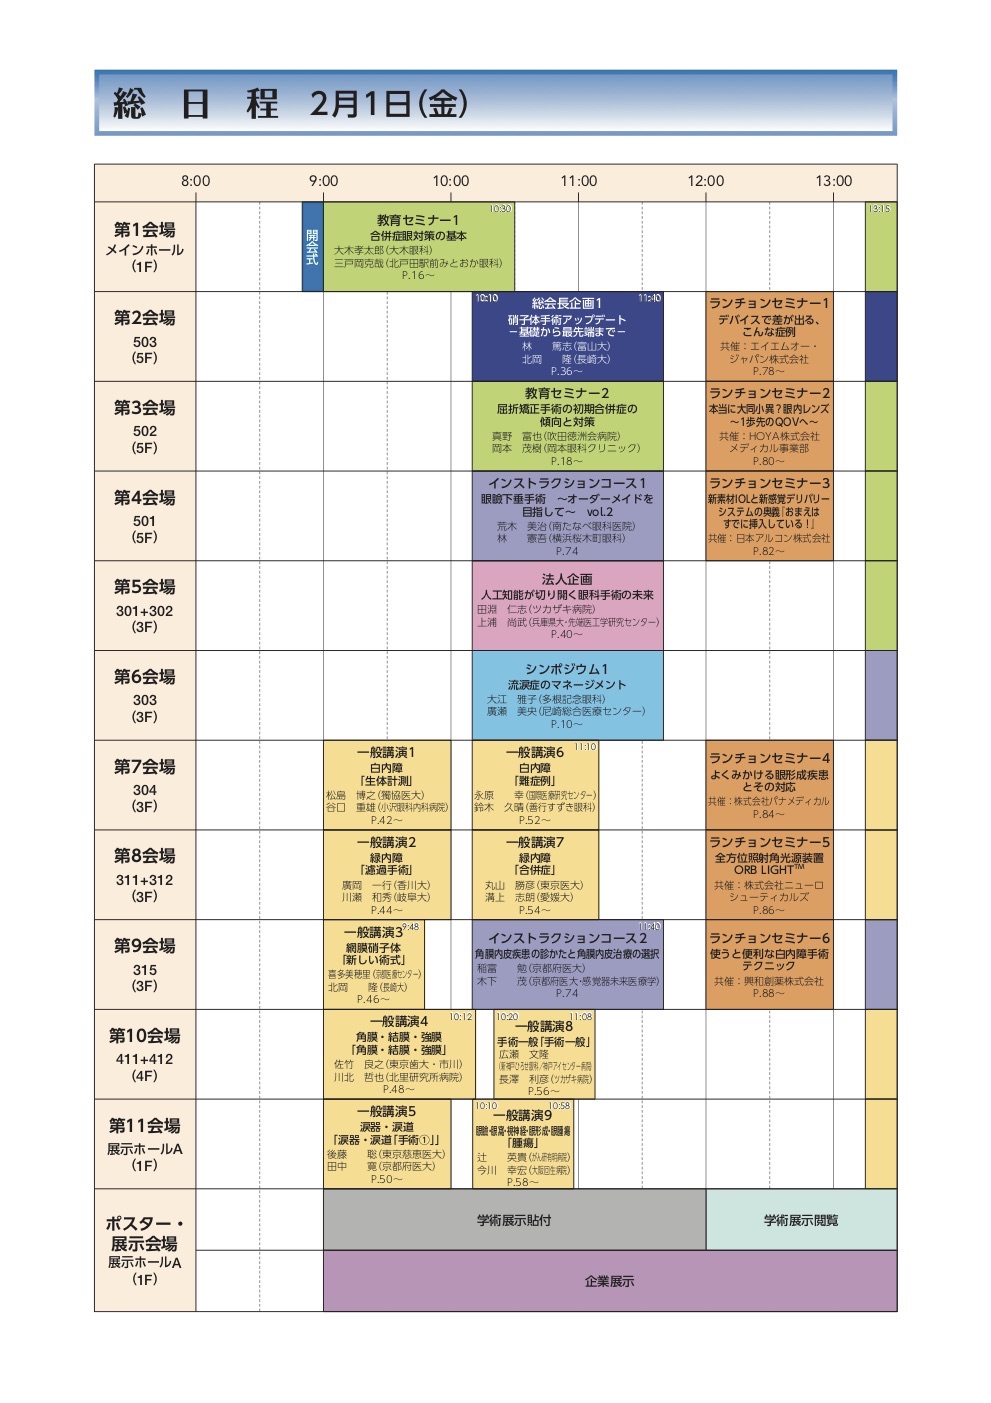 schedule-j1.jpg